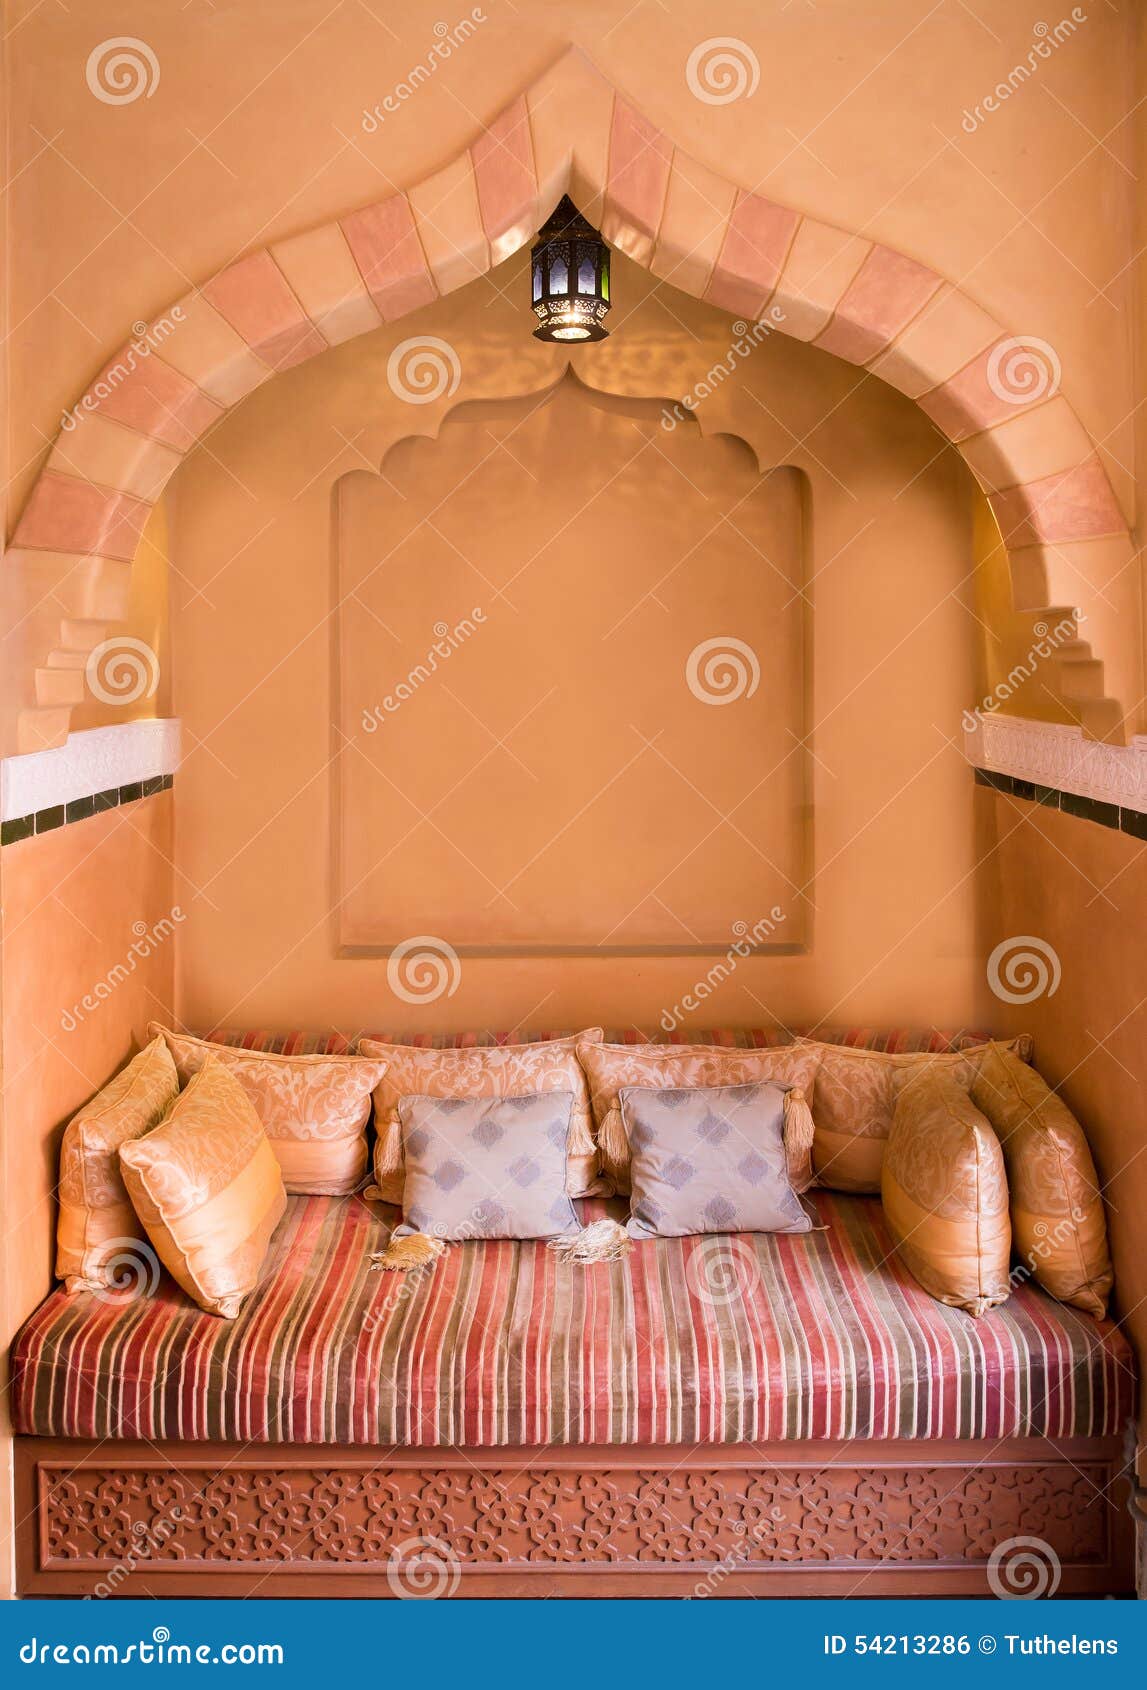 bestrating Interpersoonlijk Fantasierijk Marokkaanse Woonkamer stock foto. Image of comfortabel - 54213286